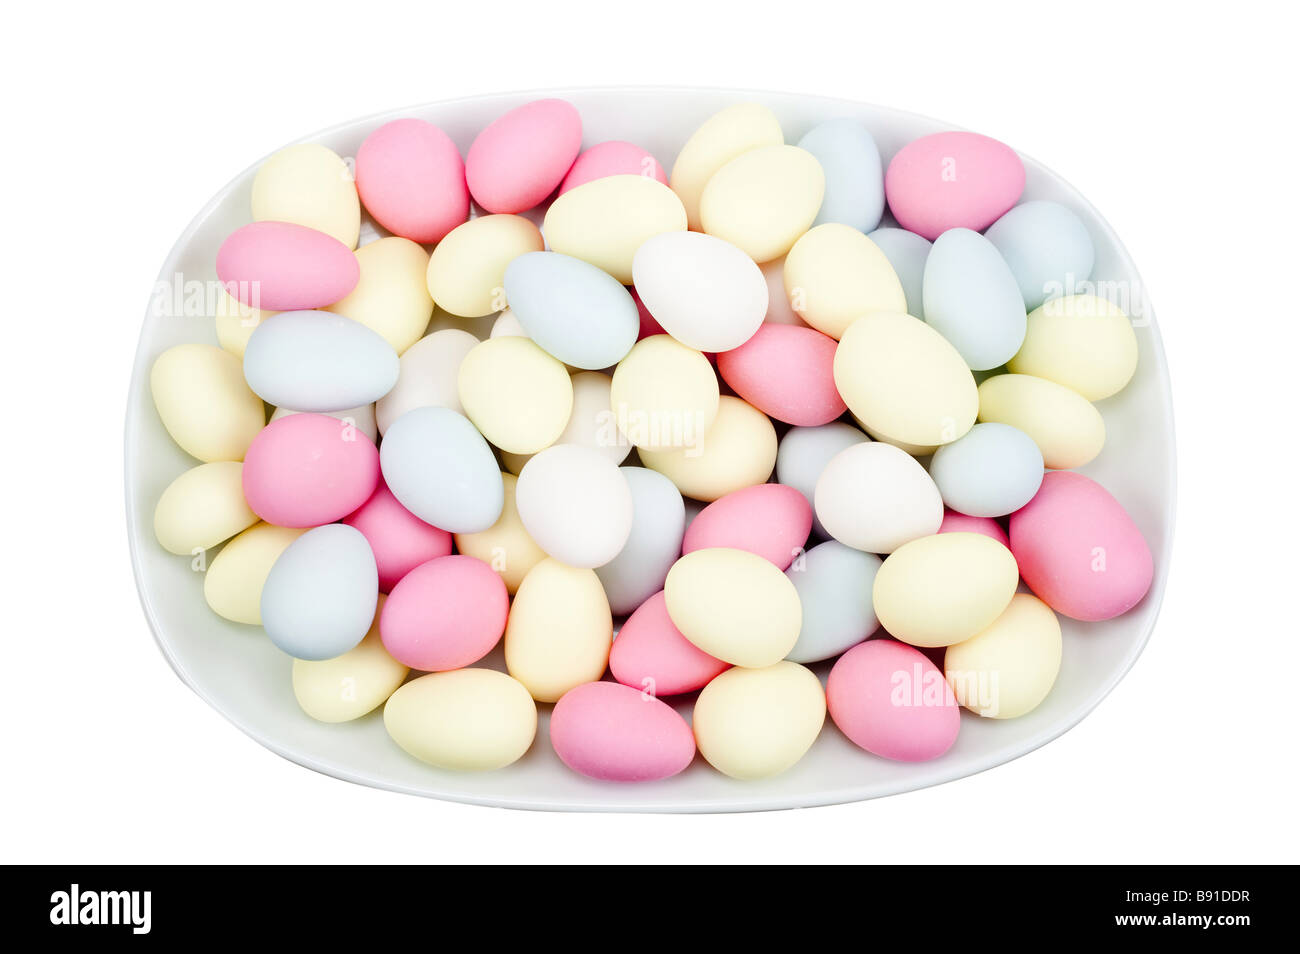 Ciotola di zucchero mandorle ricoperto le uova di pasqua isolato su uno sfondo bianco Foto Stock